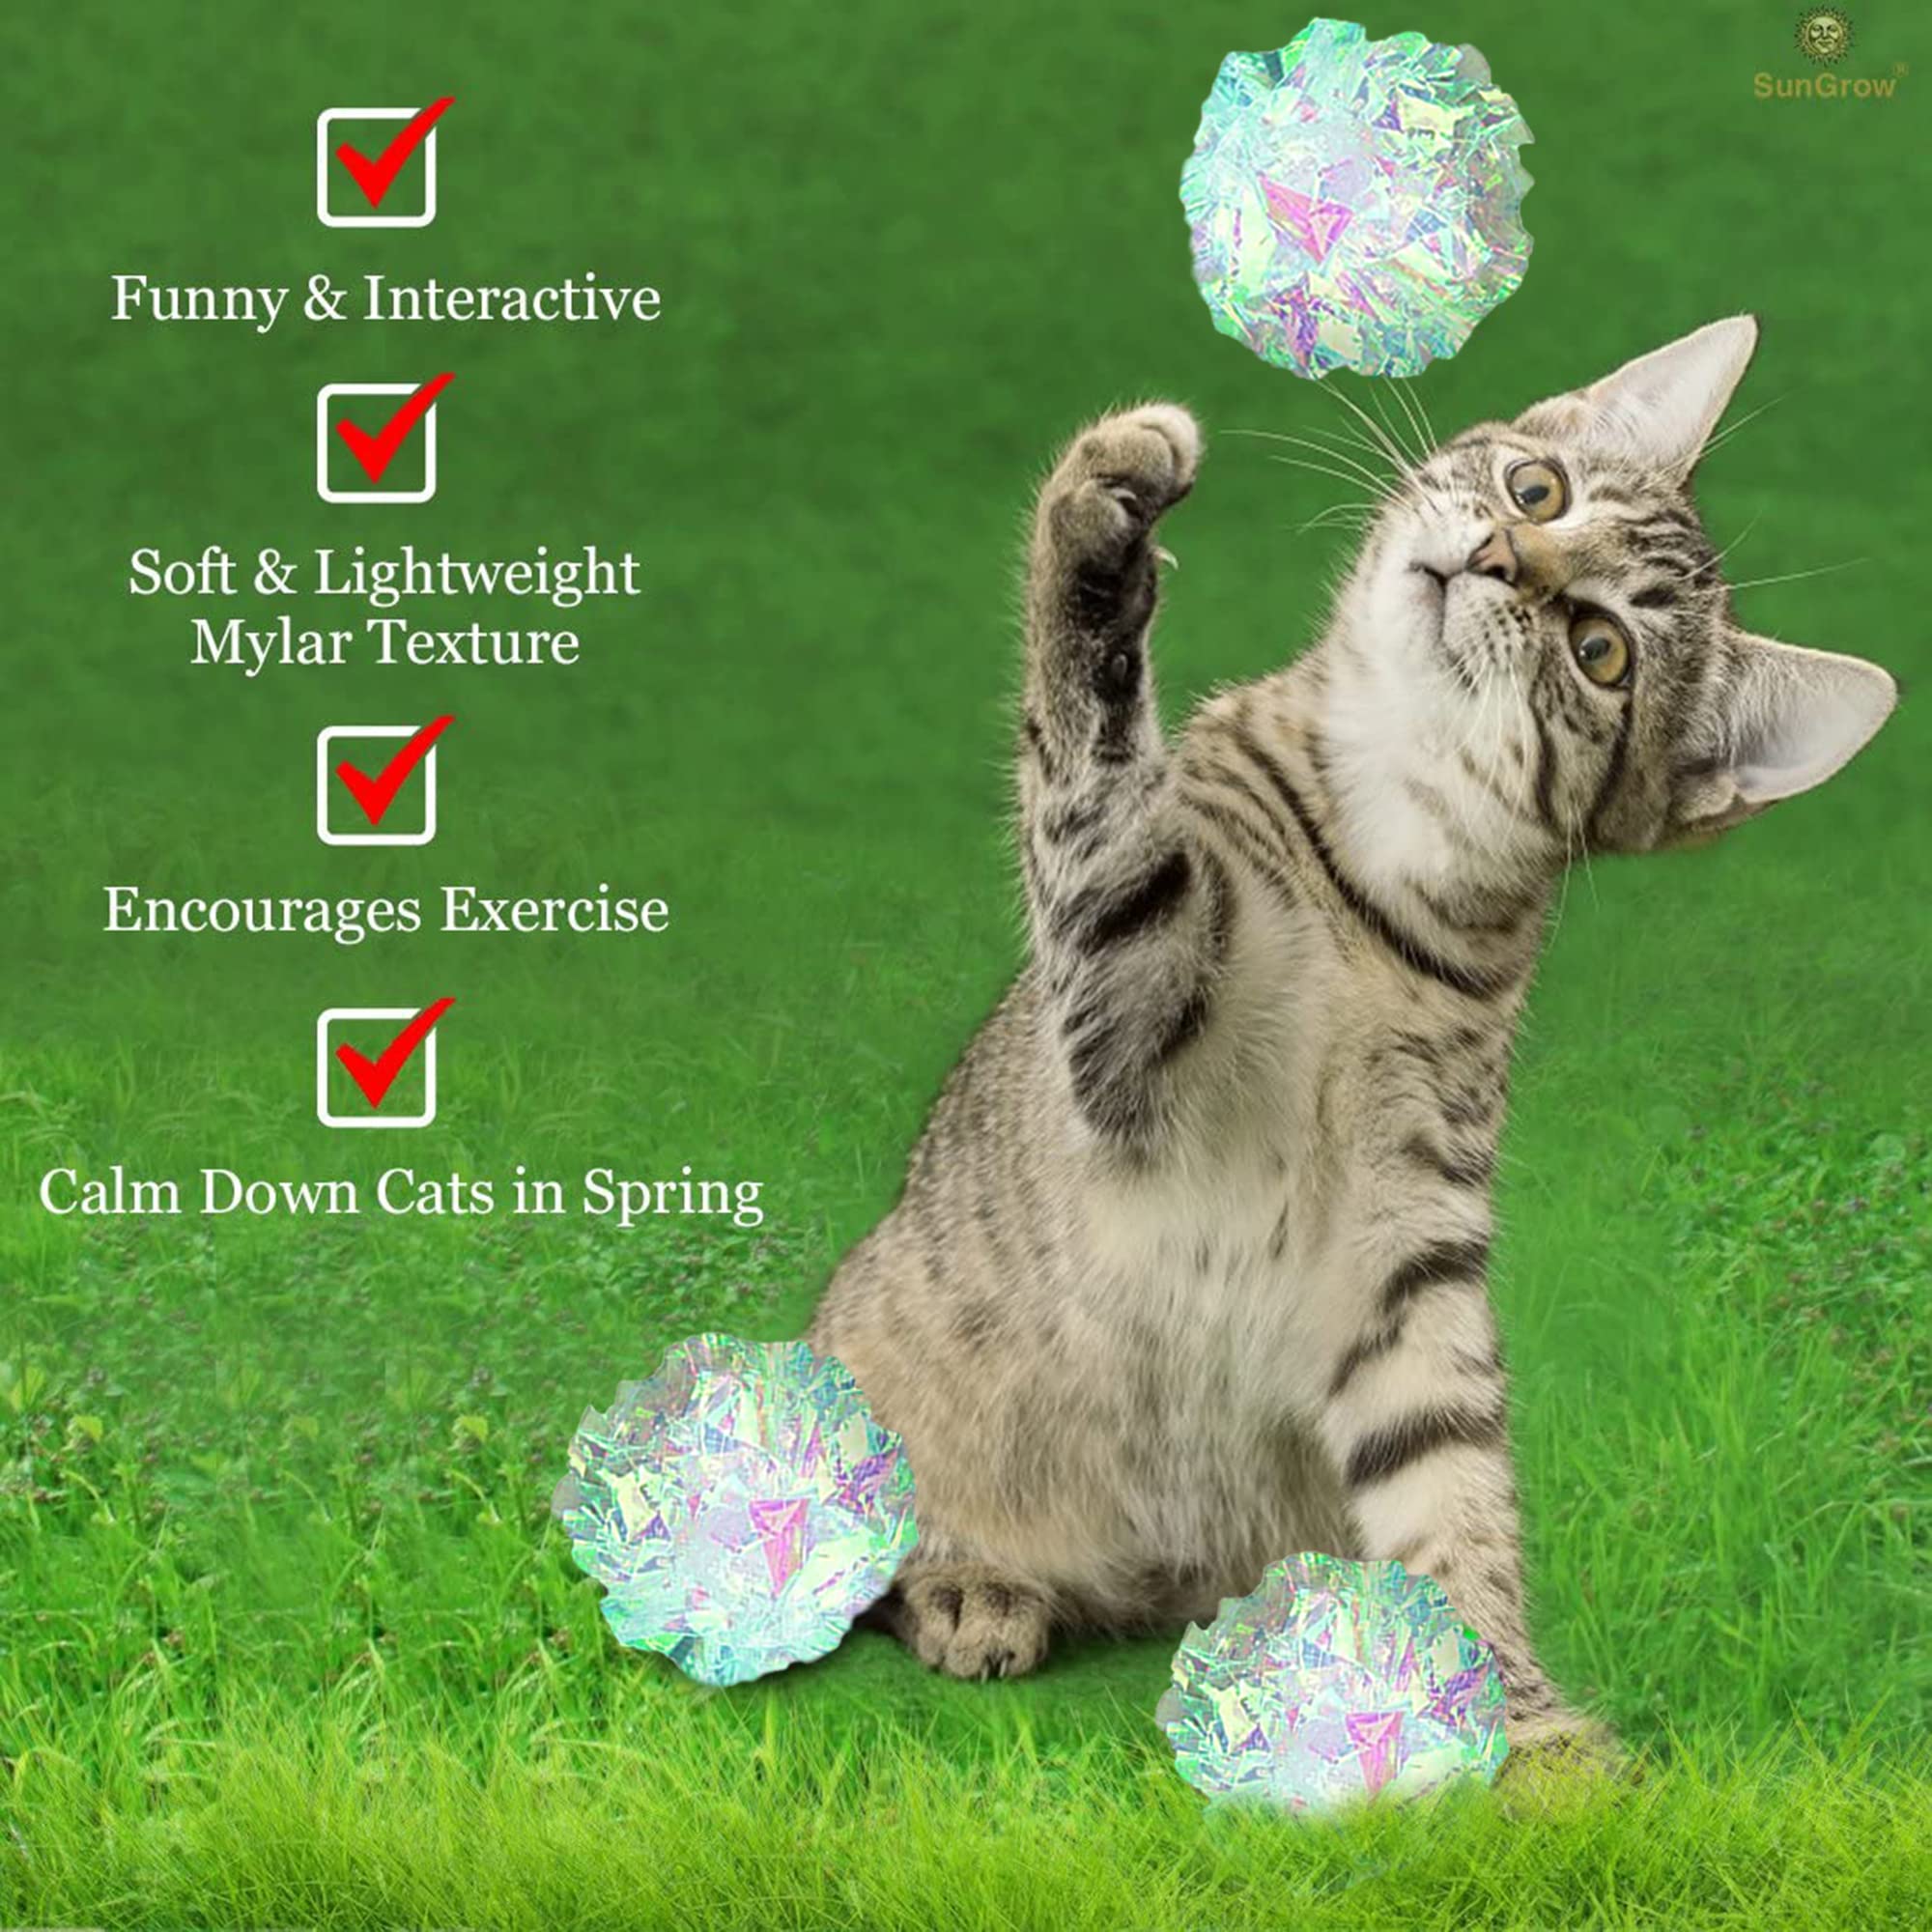 SunGrow Catクリンクルボール、屋内ペット用おもちゃ、軽量およびシルバー、子猫および成猫に最適、1.5〜2インチ、パックあたり12個